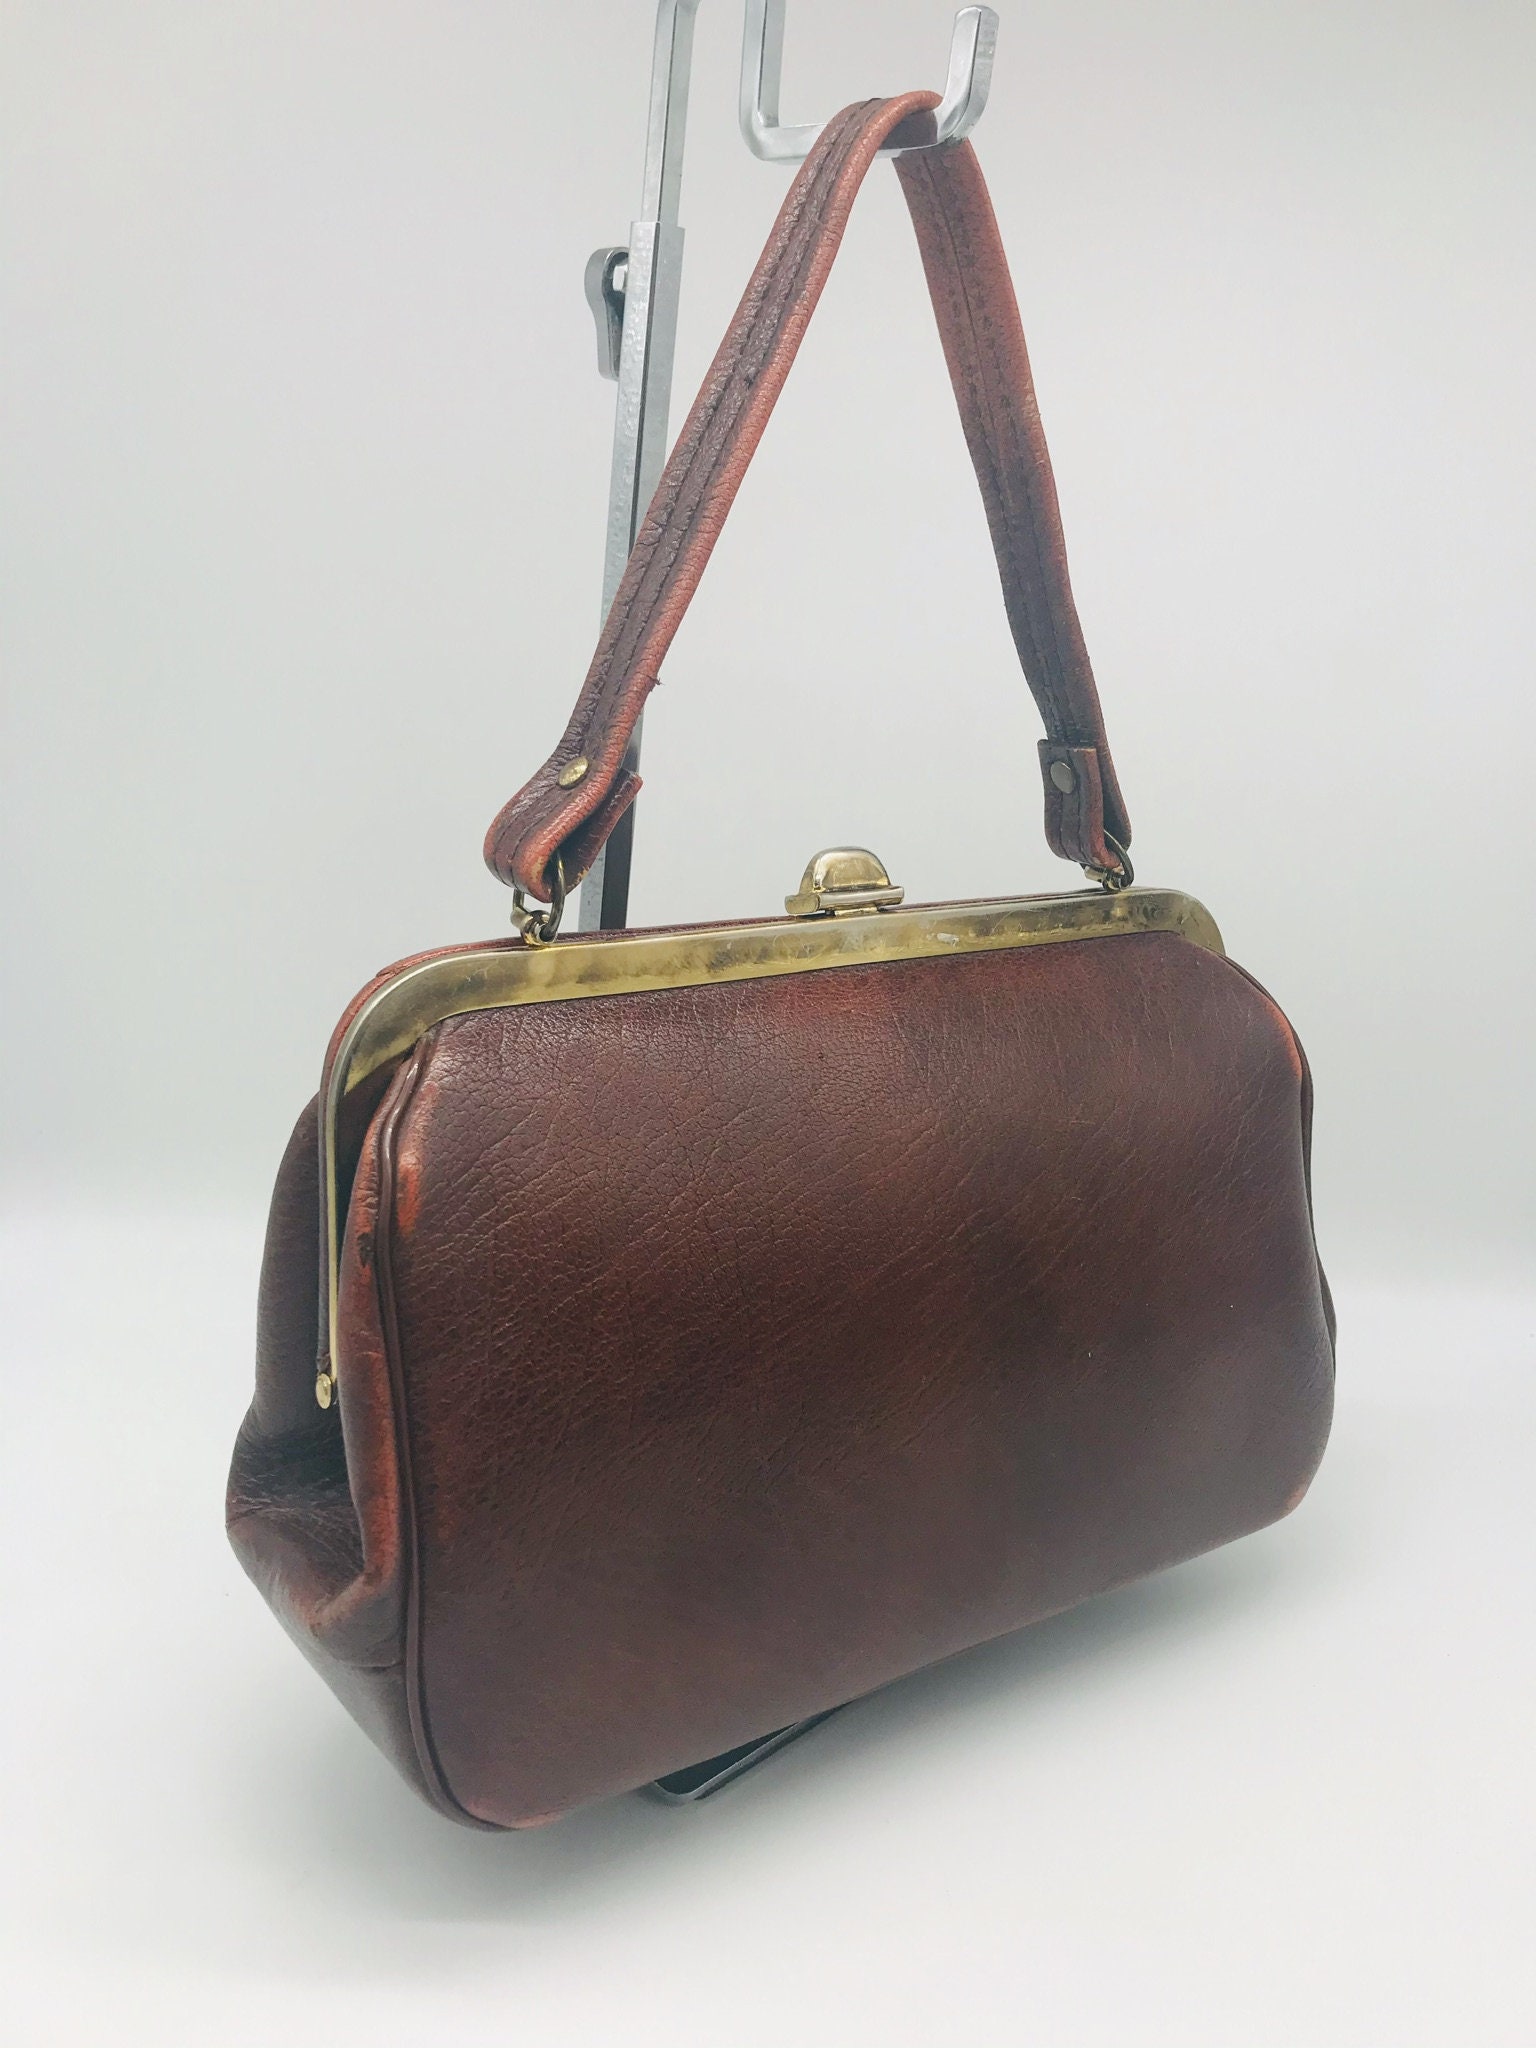 Leather Handbag Vintage Brown With Gold Tone Hardware Dr Bag - Etsy